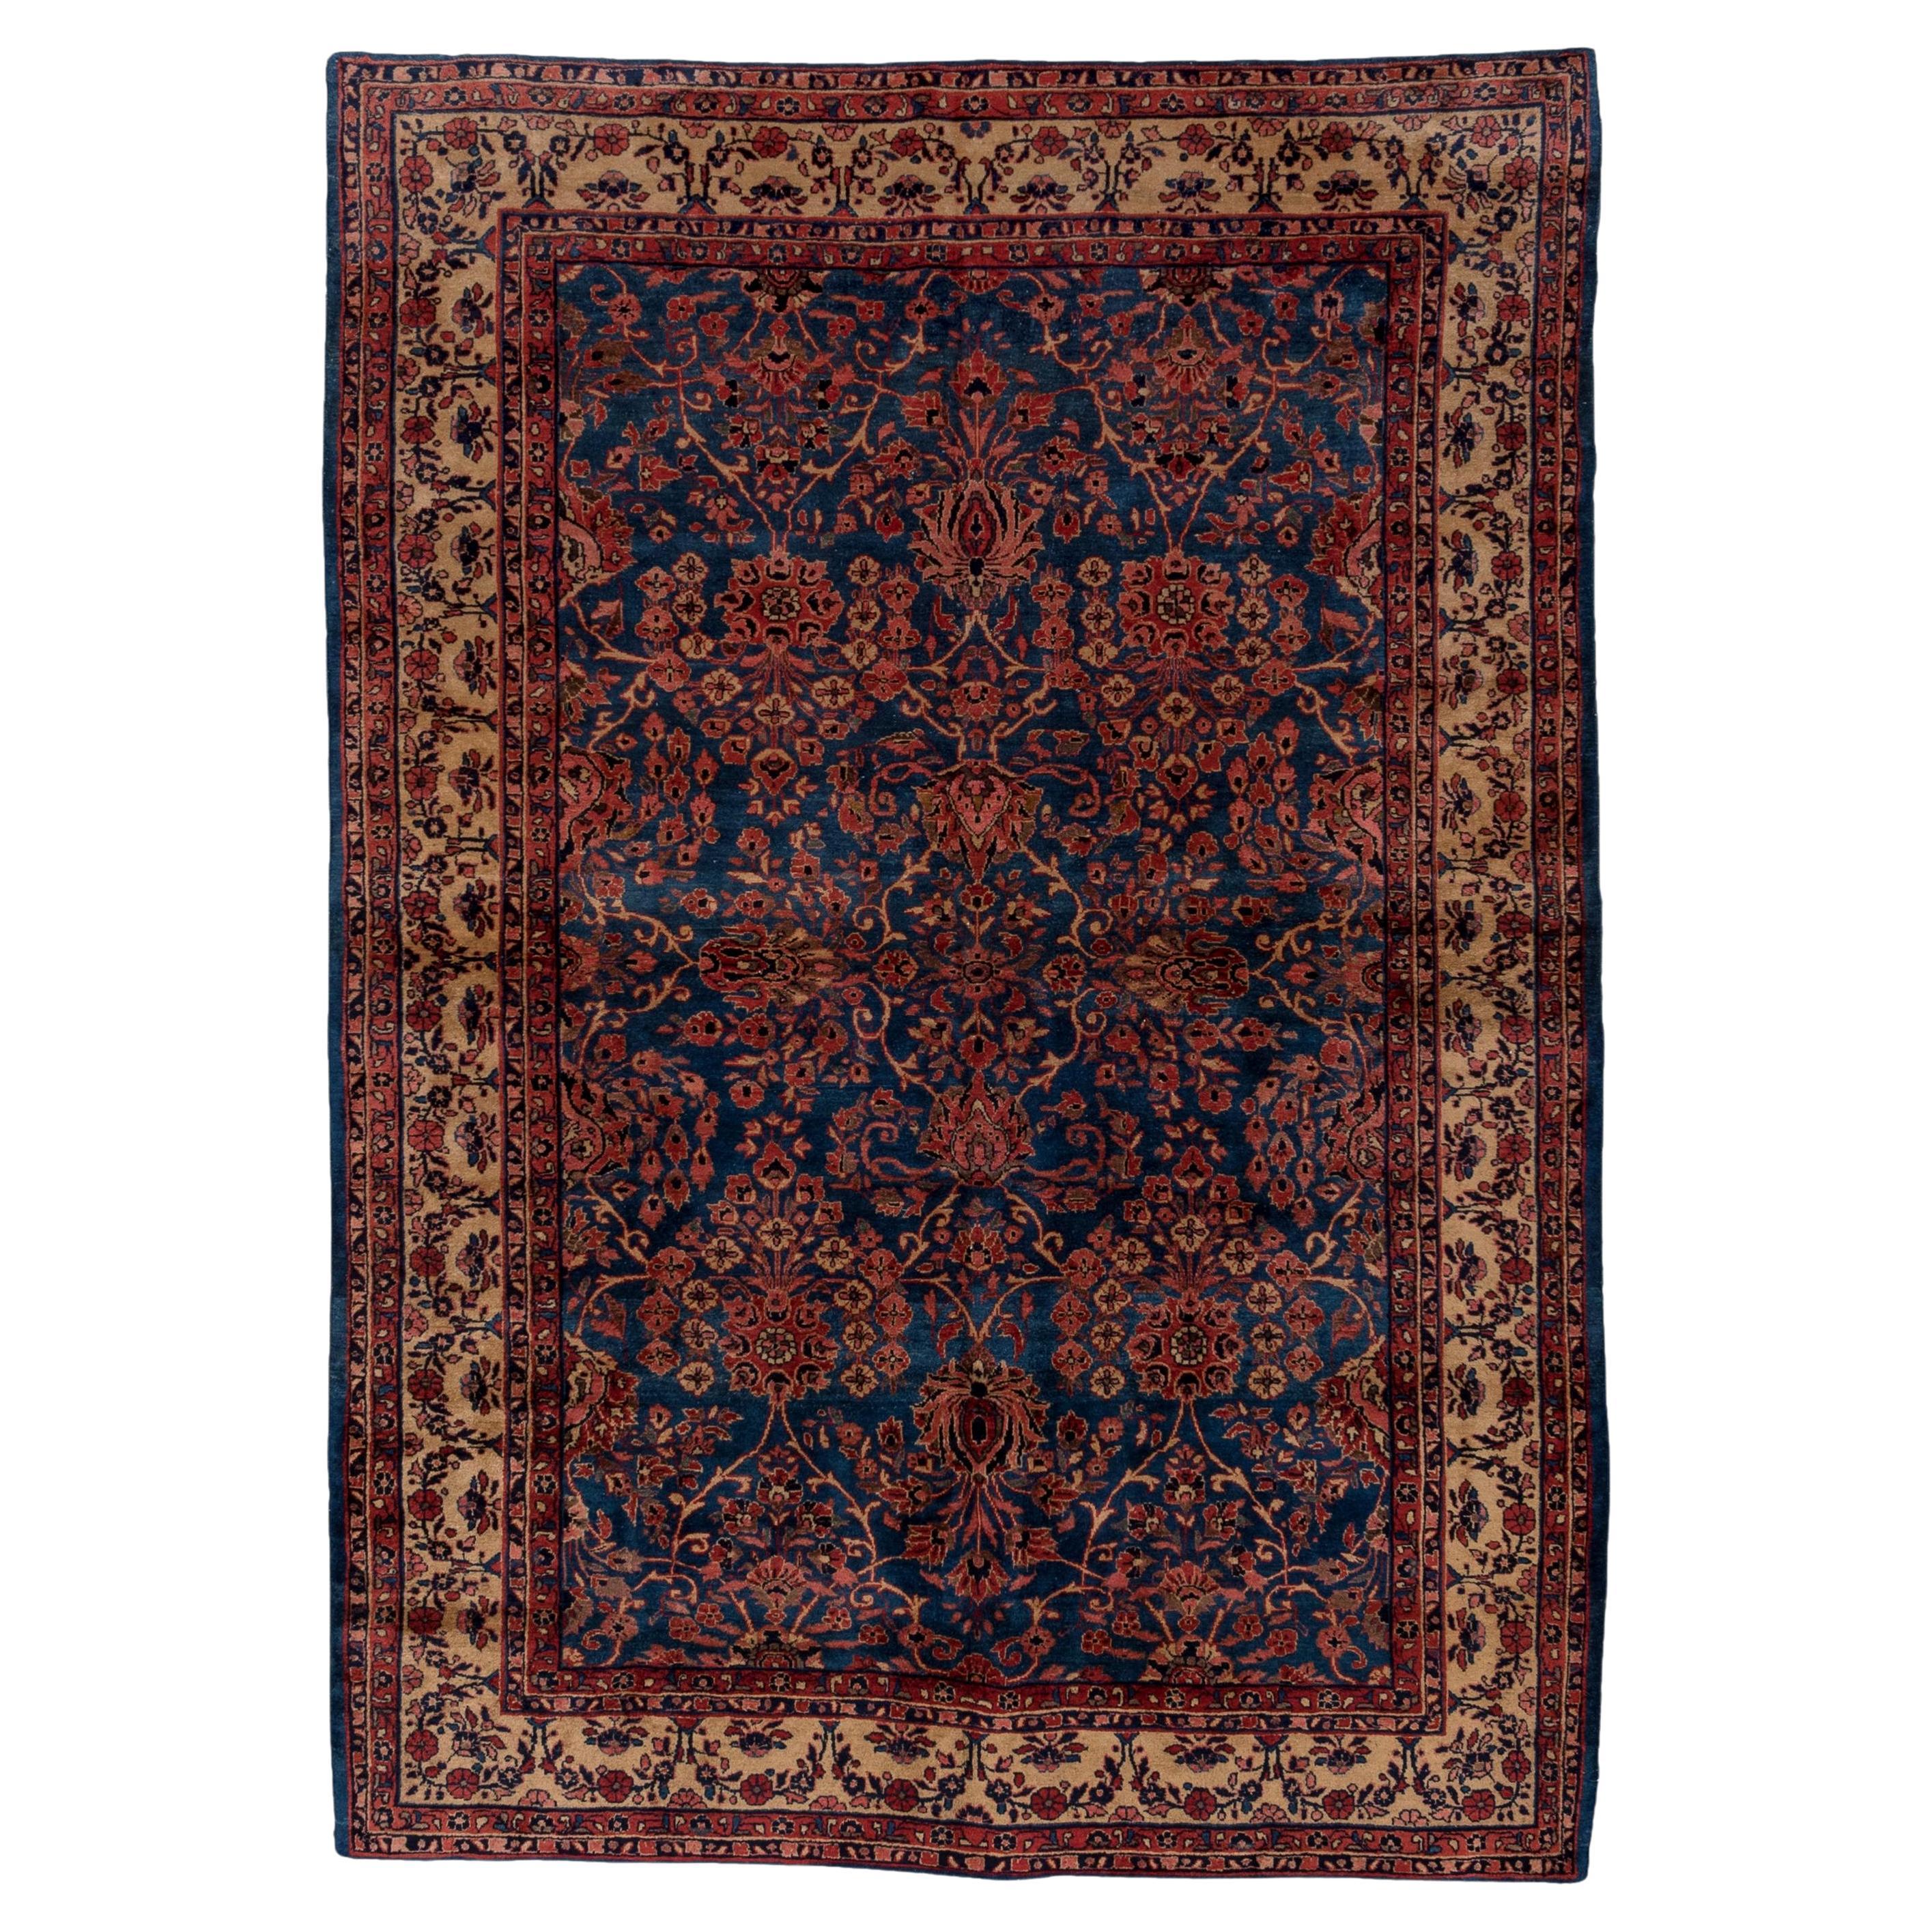 Antiker persischer Sarouk-Teppich aus Sarouk, königsblau, All-Over- Field, glänzende beige Bordüren